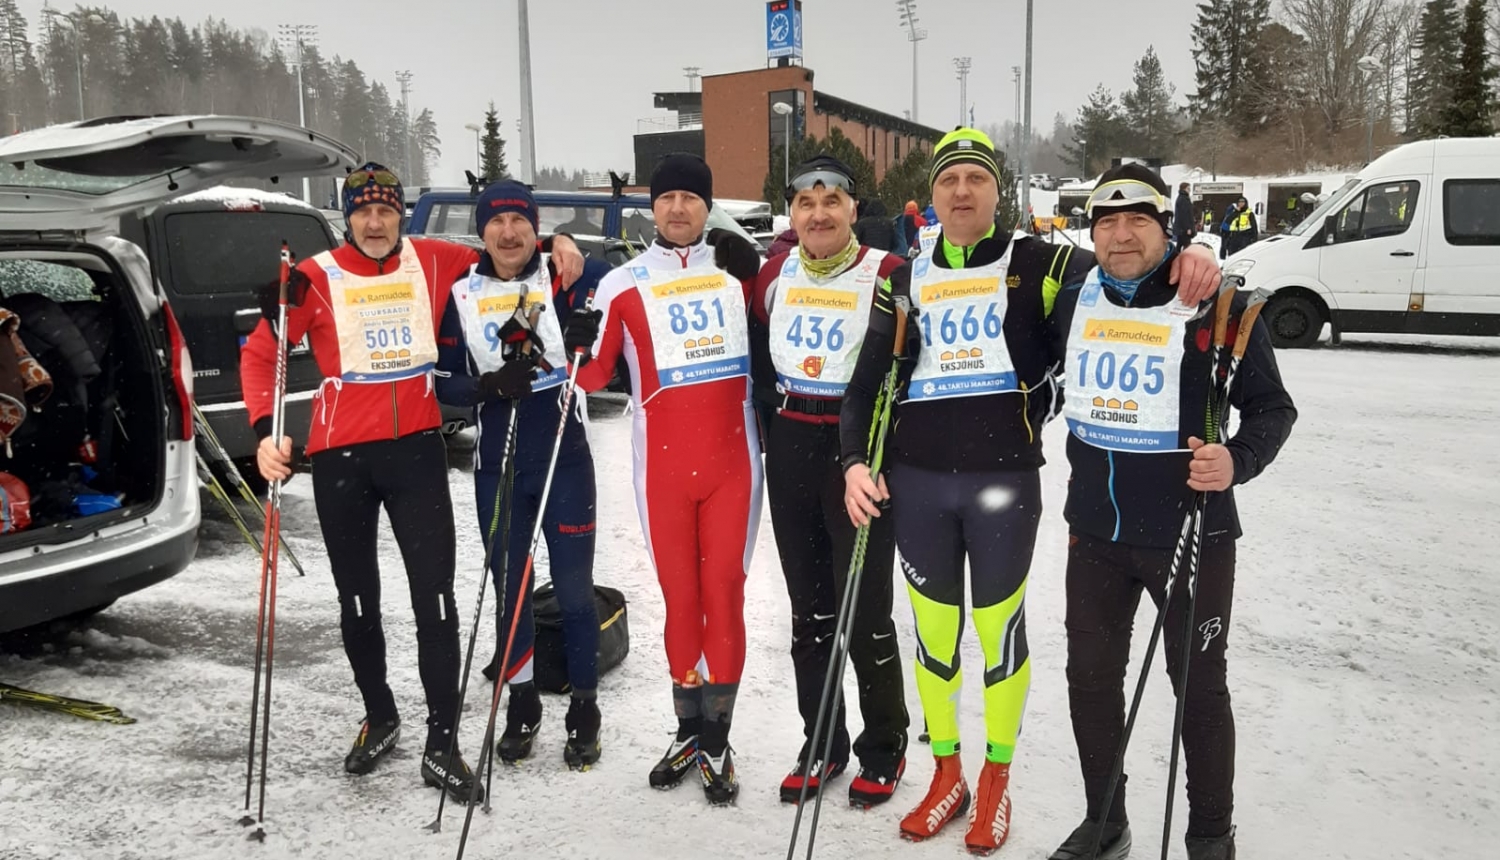 Slēpošanas sacensībās "Tartu Maraton" startē valcēnieši